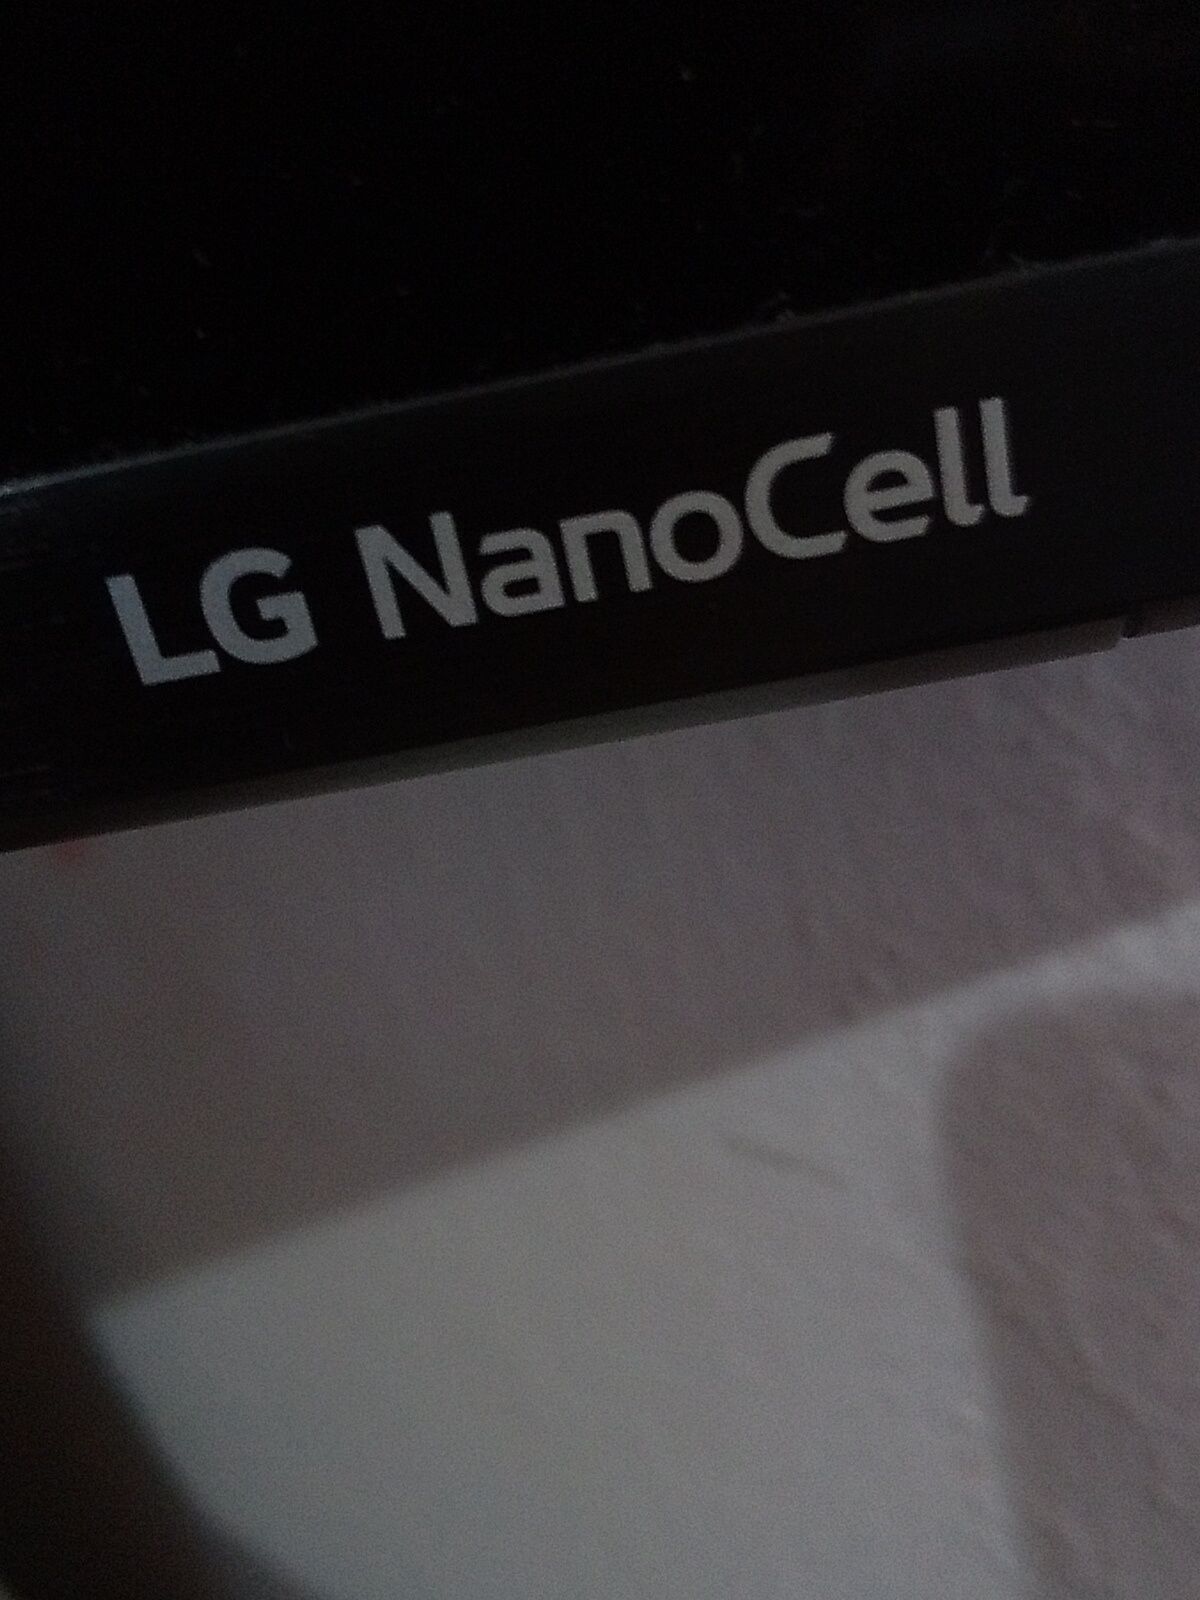 Vând televizor Lg nanocell